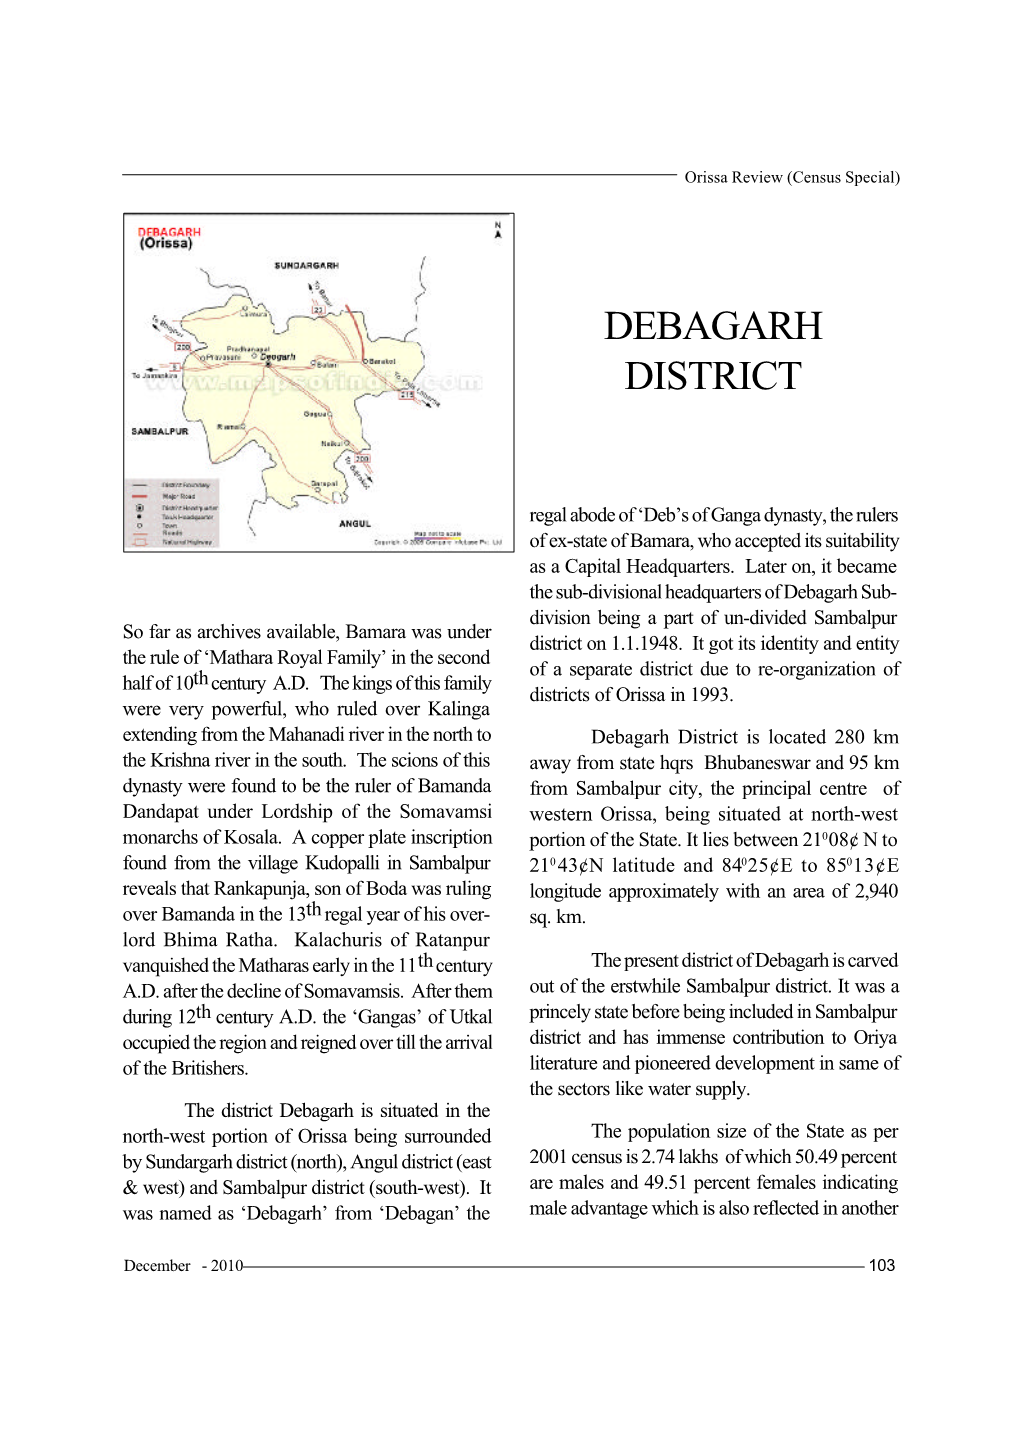 Debagarh District